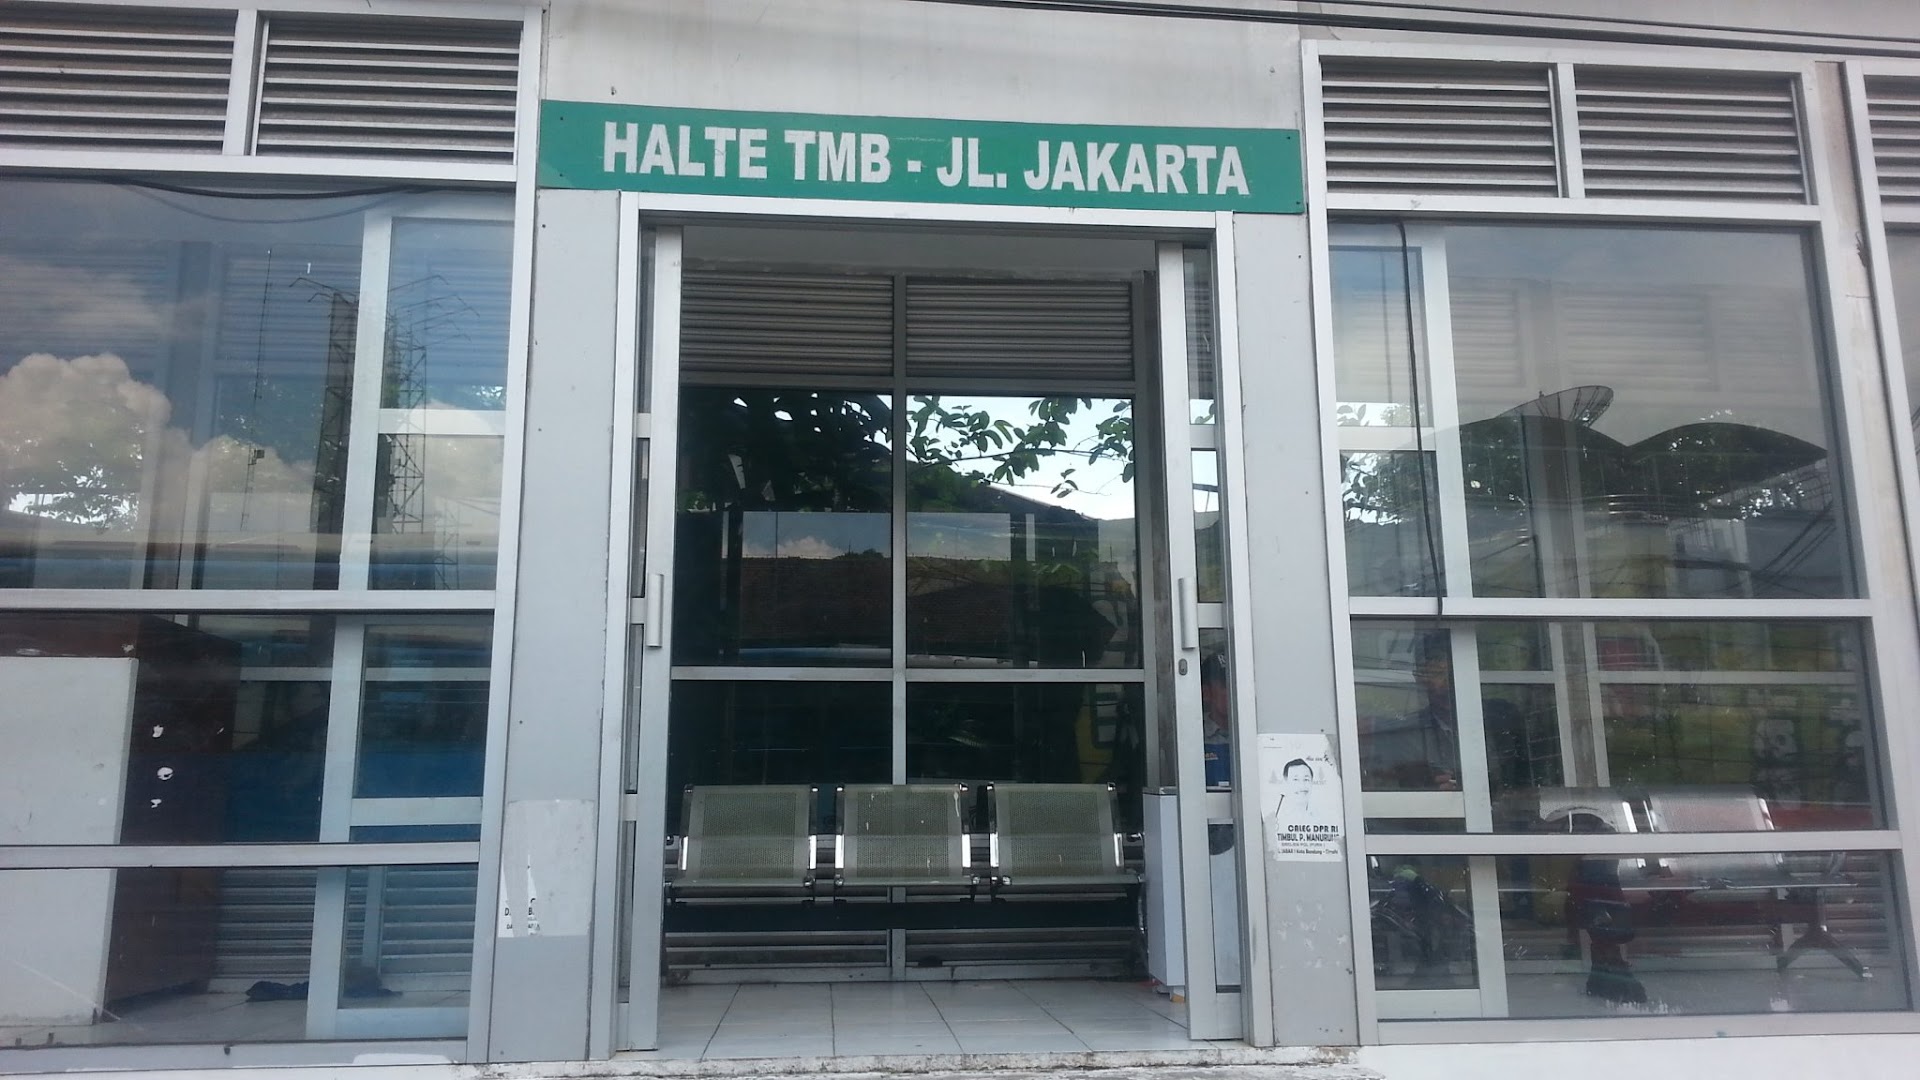 Halte Tmb - Jl. Jakarta Photo